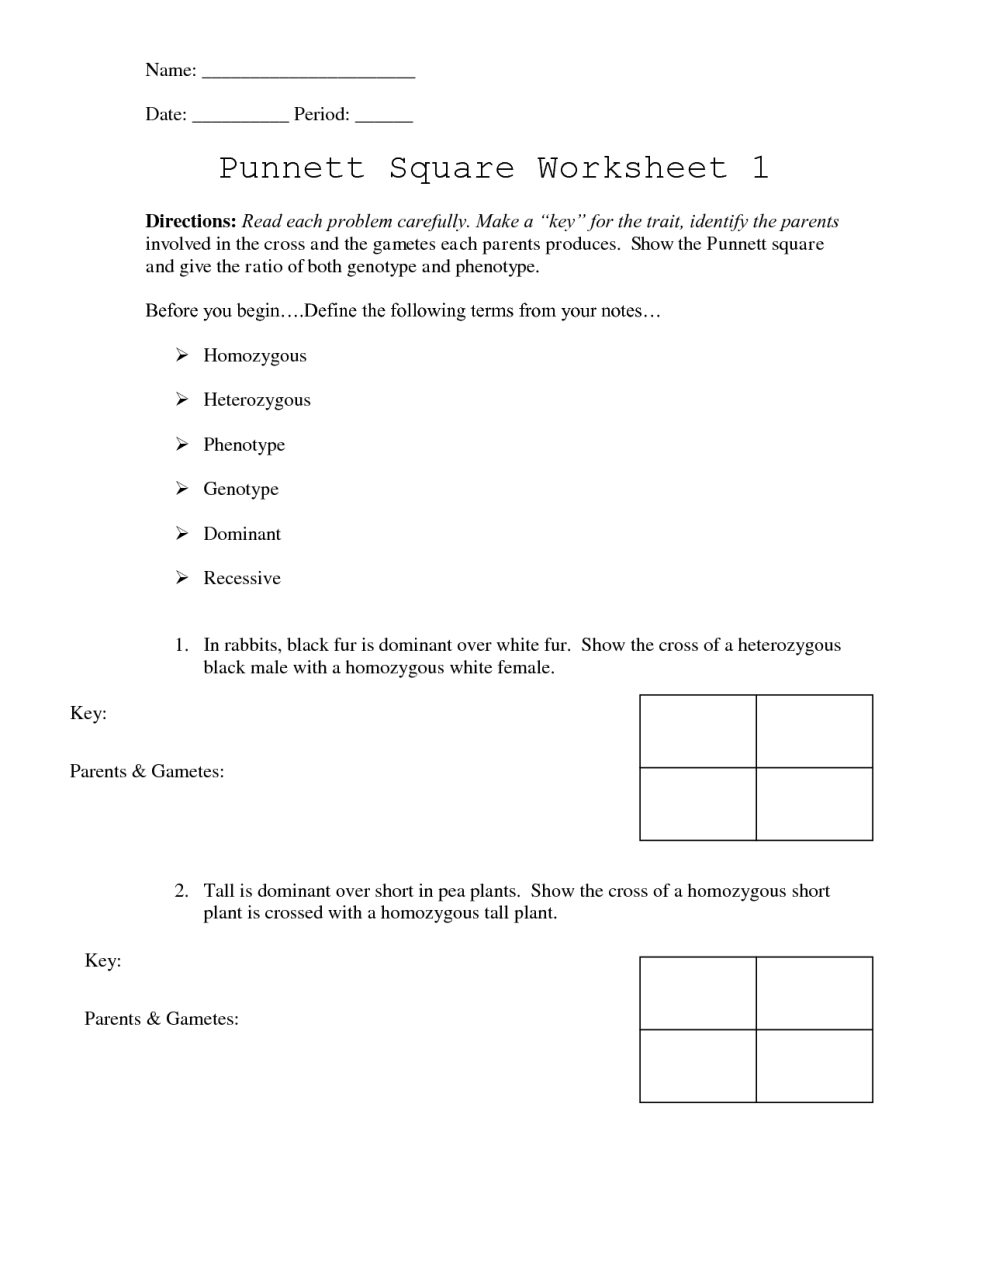 Punnett Square Worksheet 2 Answer Key